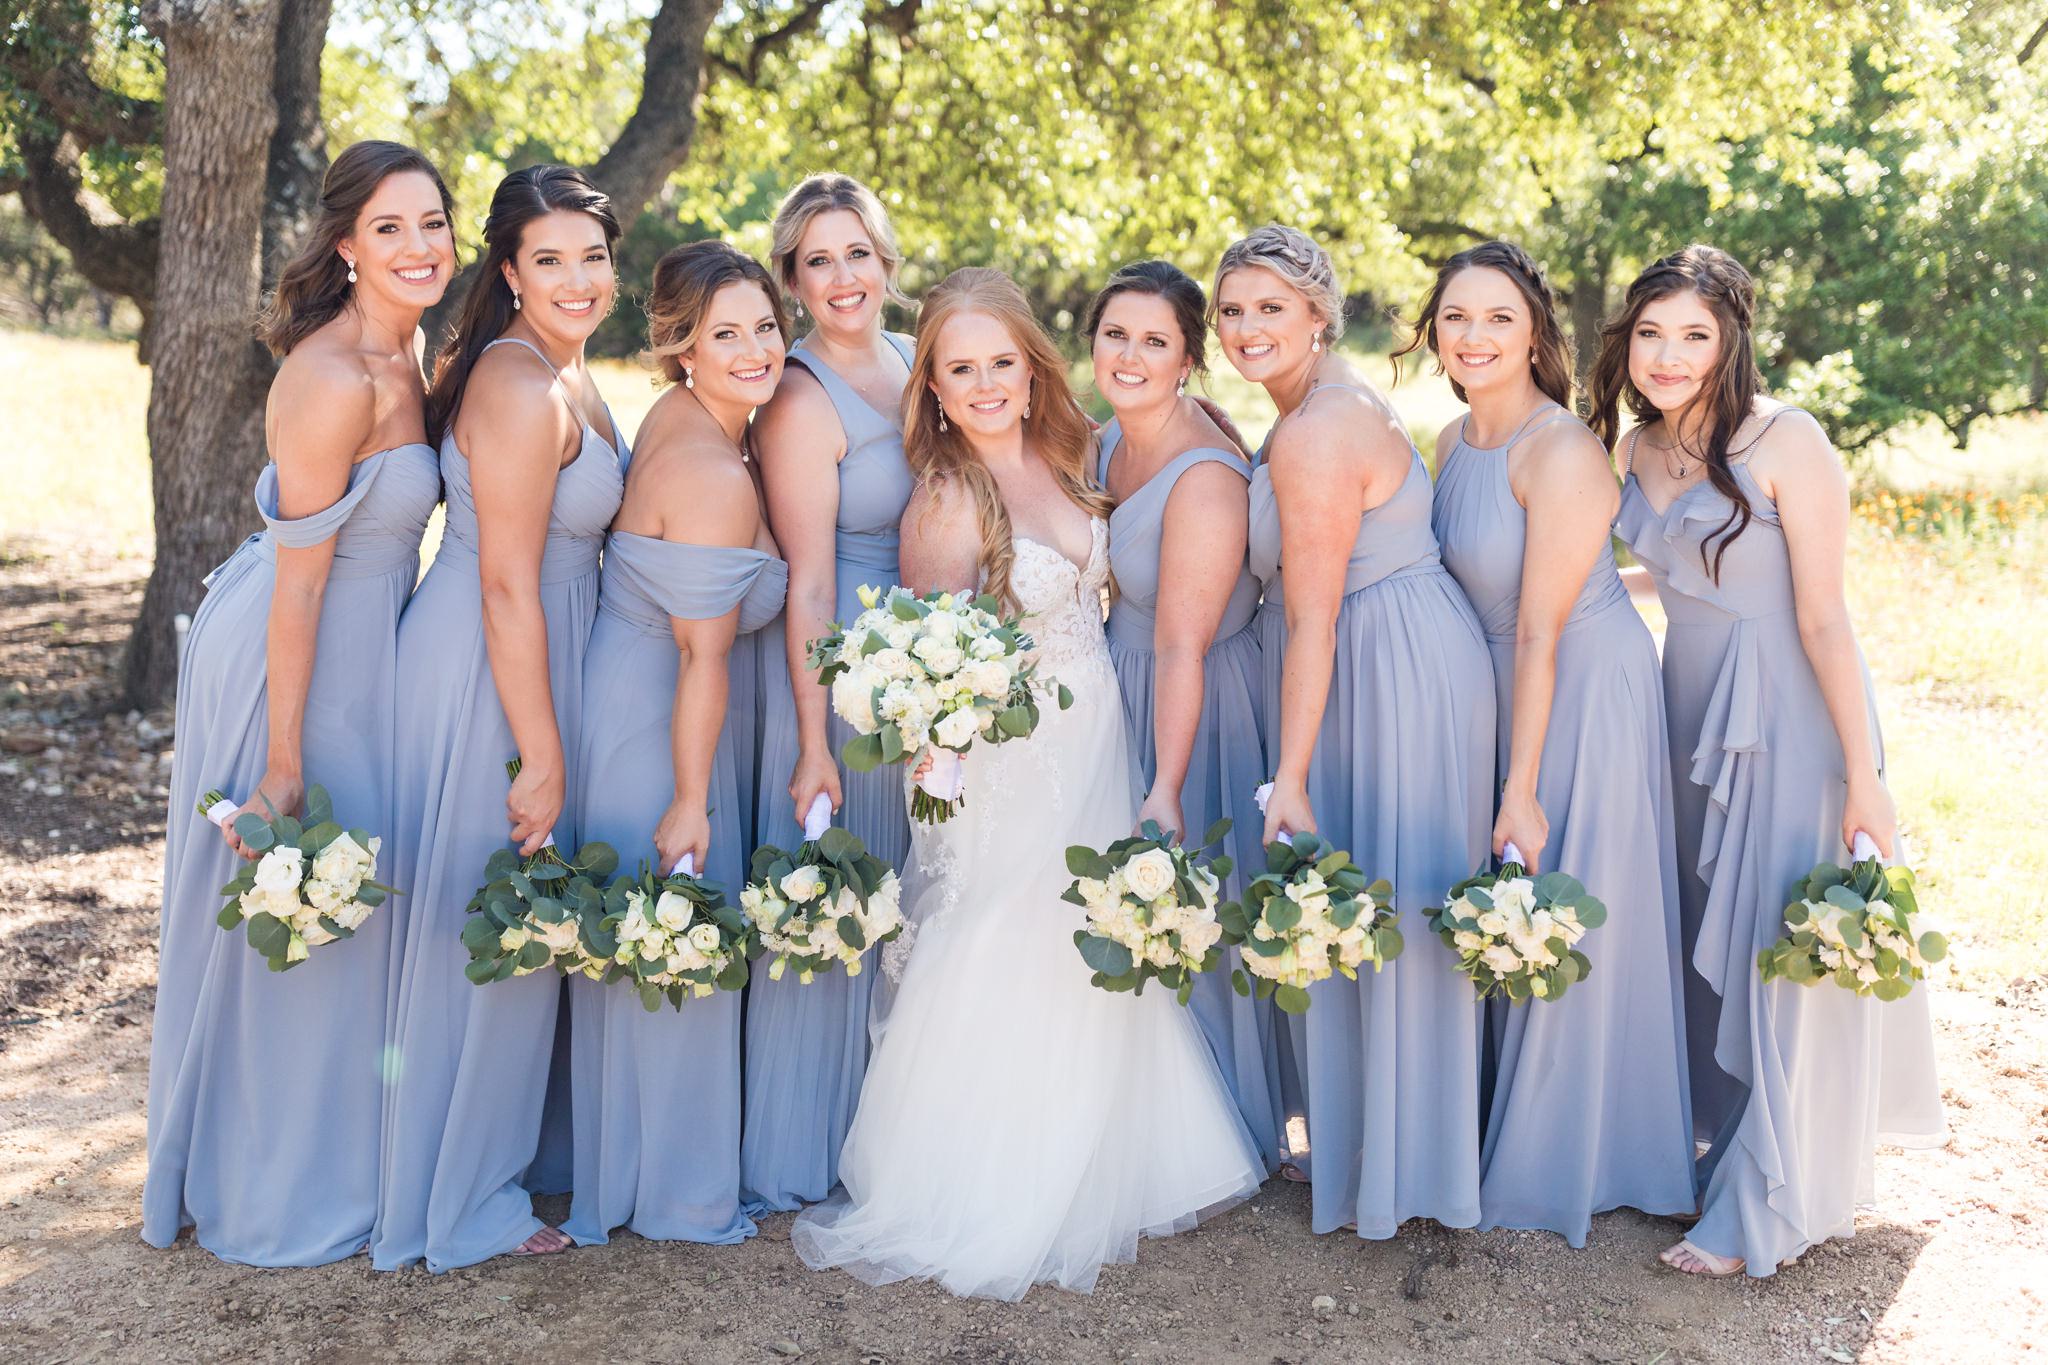 A Dusty Blue and Navy Wedding at Kendall Plantation in Boerne, TX by Dawn Elizabeth Studios, San Antonio Wedding Photographer